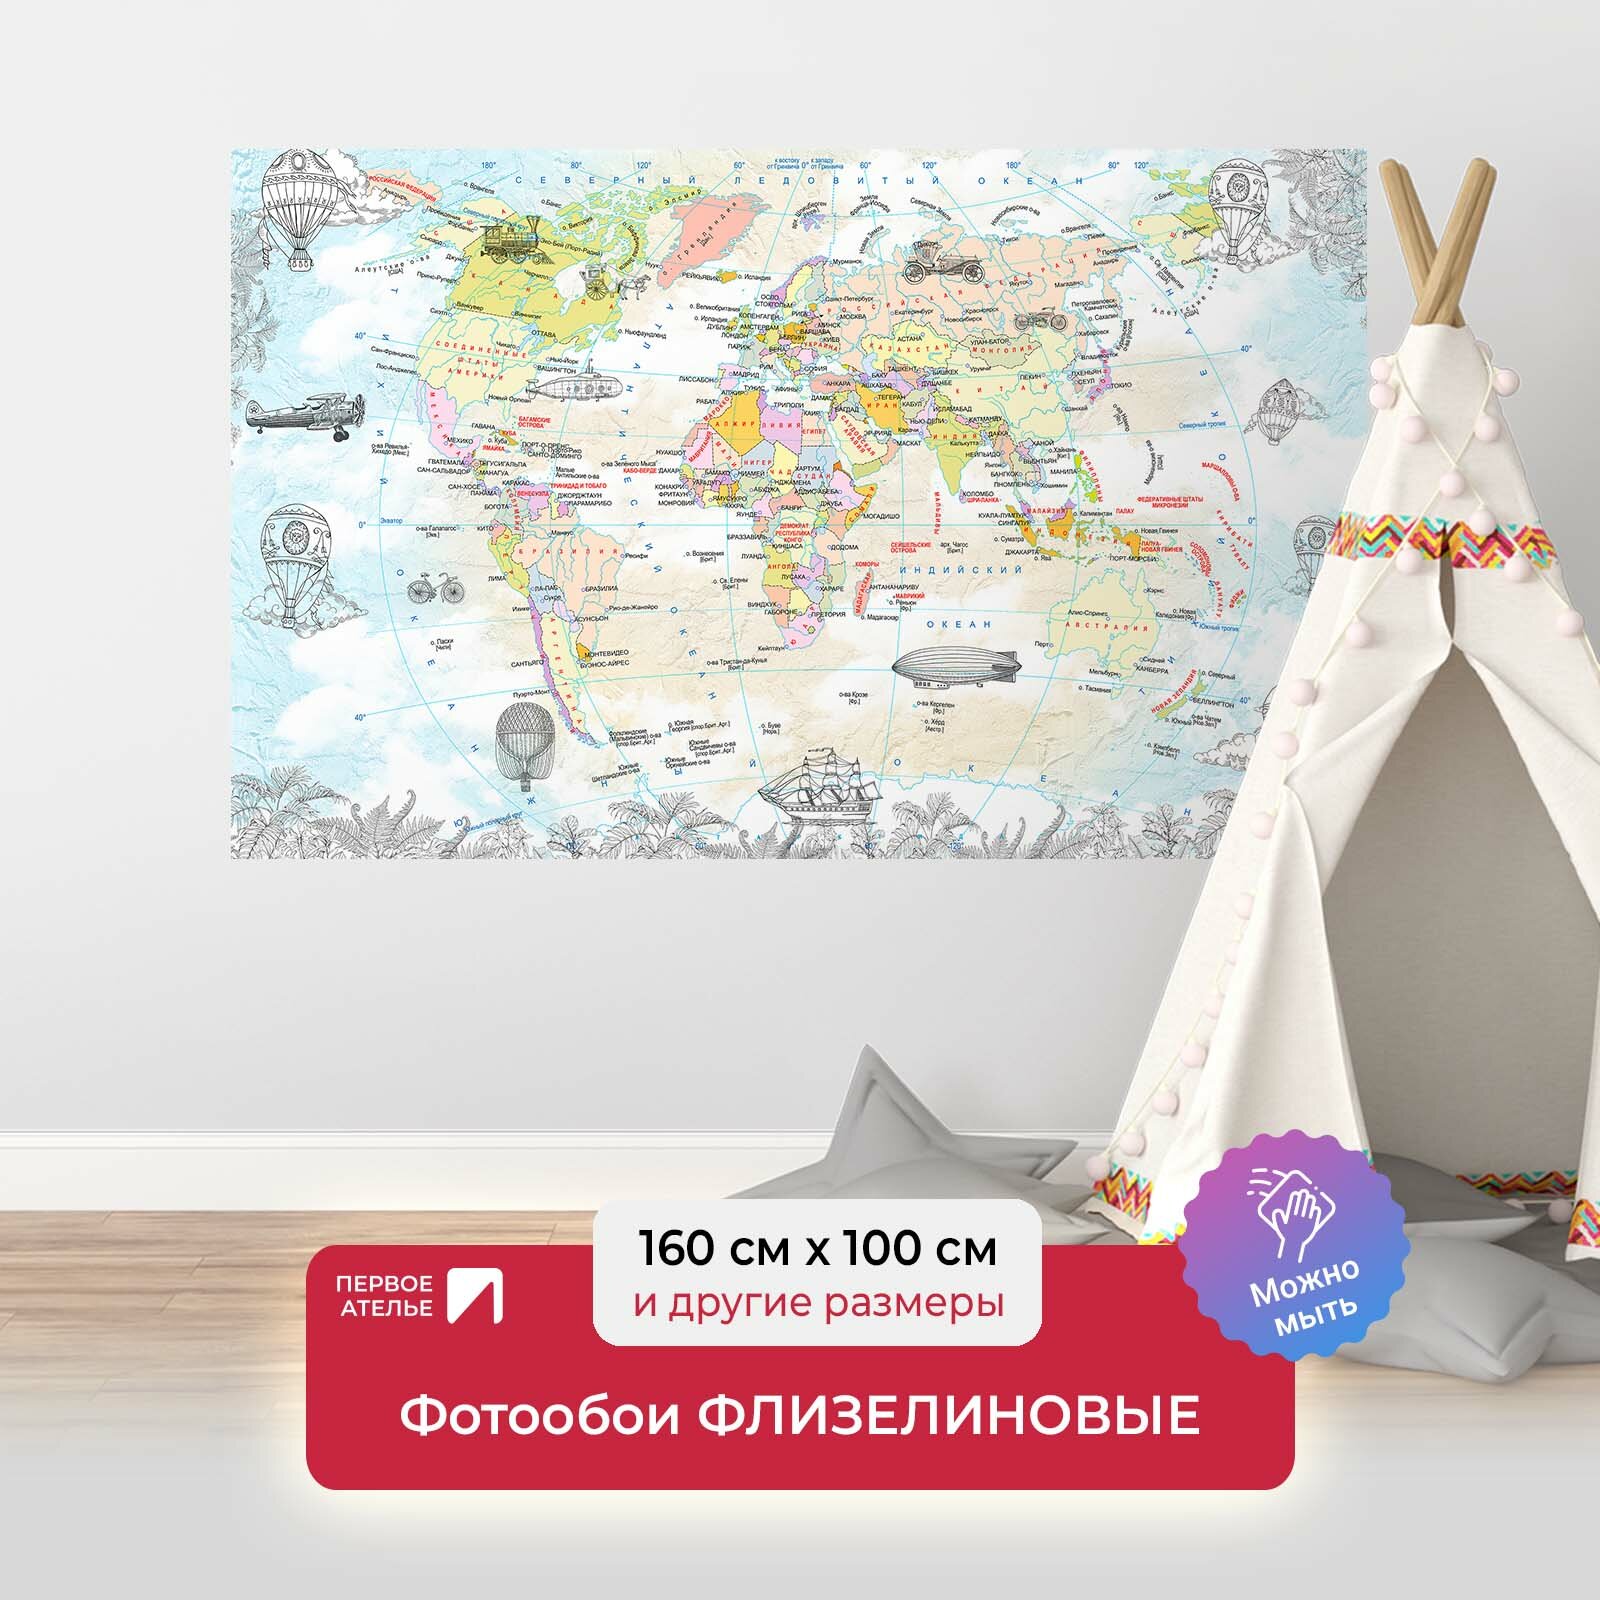 Фотообои на стену для детей и подростков первое ателье "Карта континентов с дирижаблями и воздушными шарами" 160х100 см (ШхВ), флизелиновые Premium